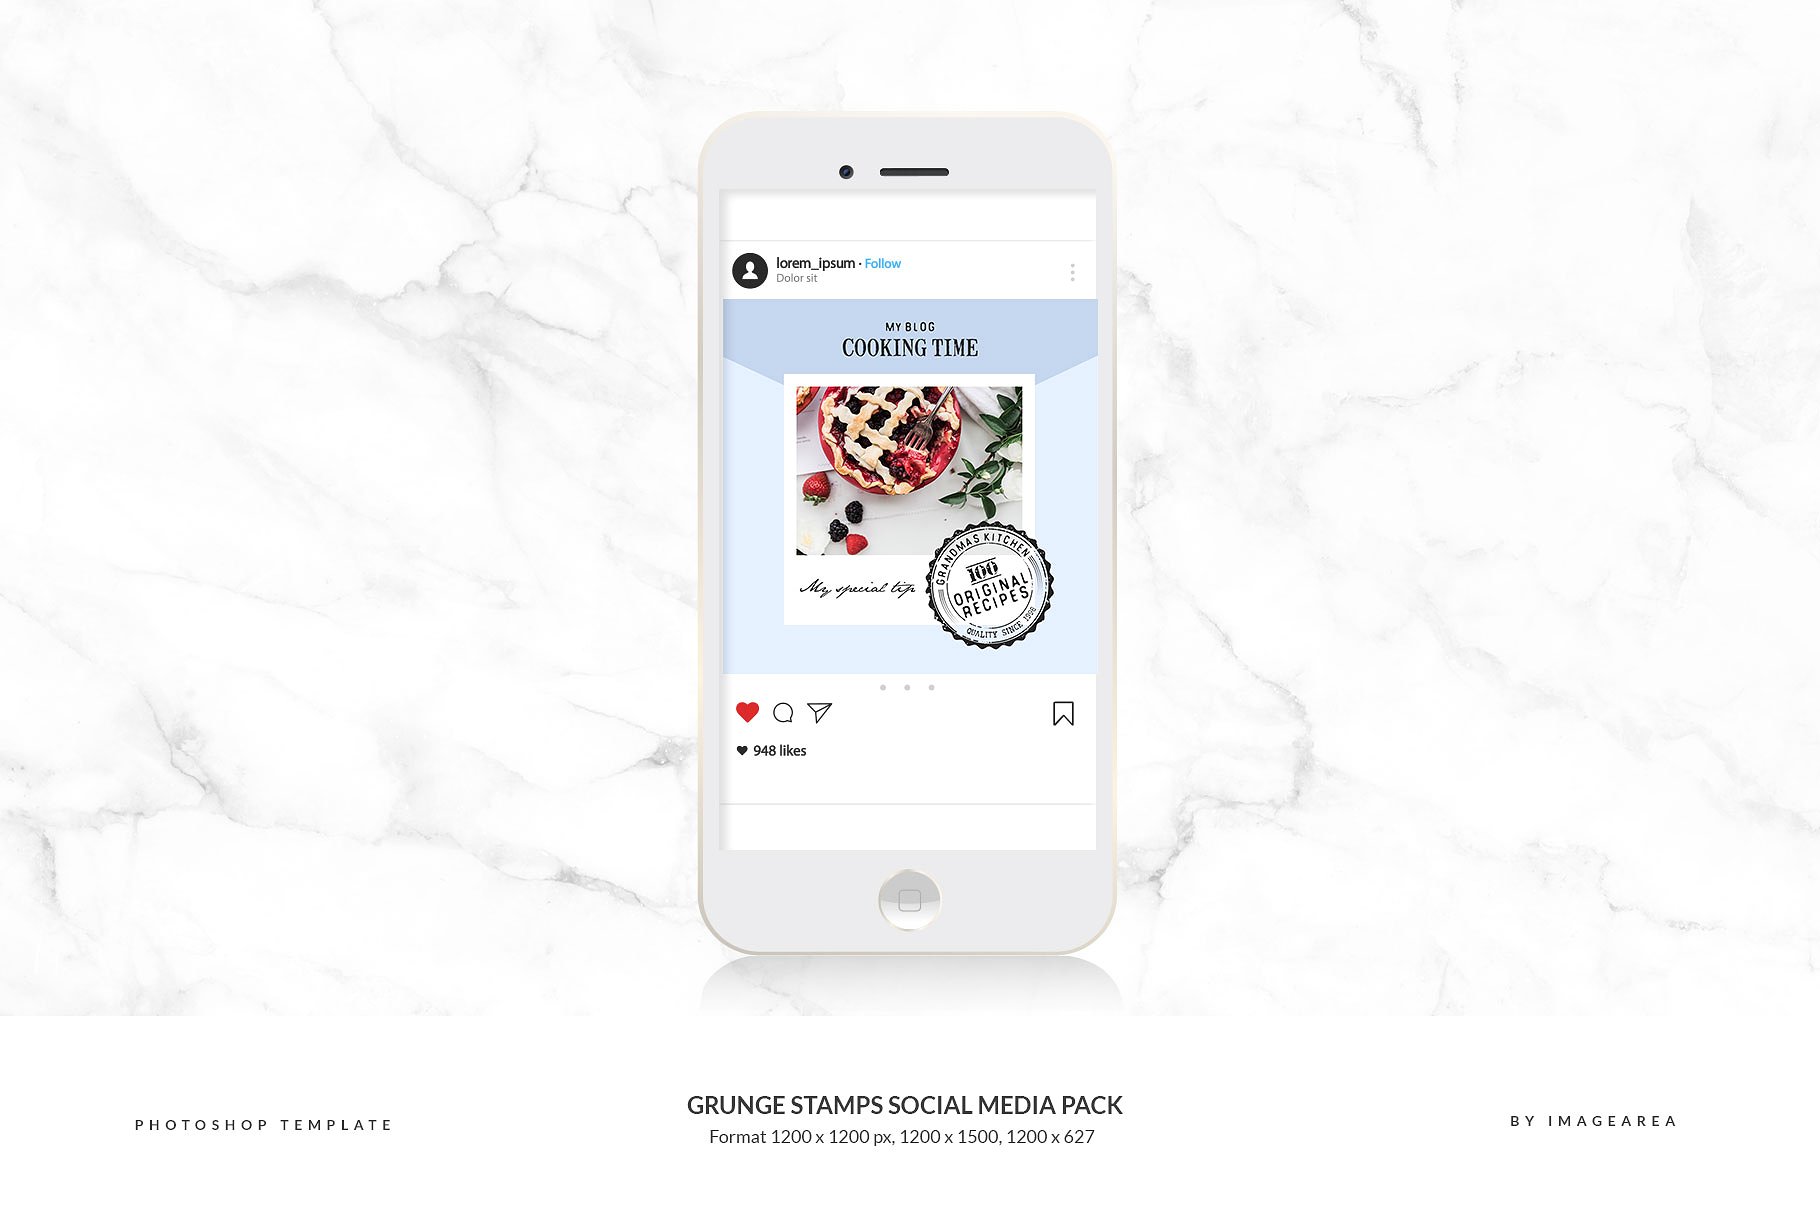 社交媒体、博客插图设计素材包 Grunge stamps Social Media Pack插图